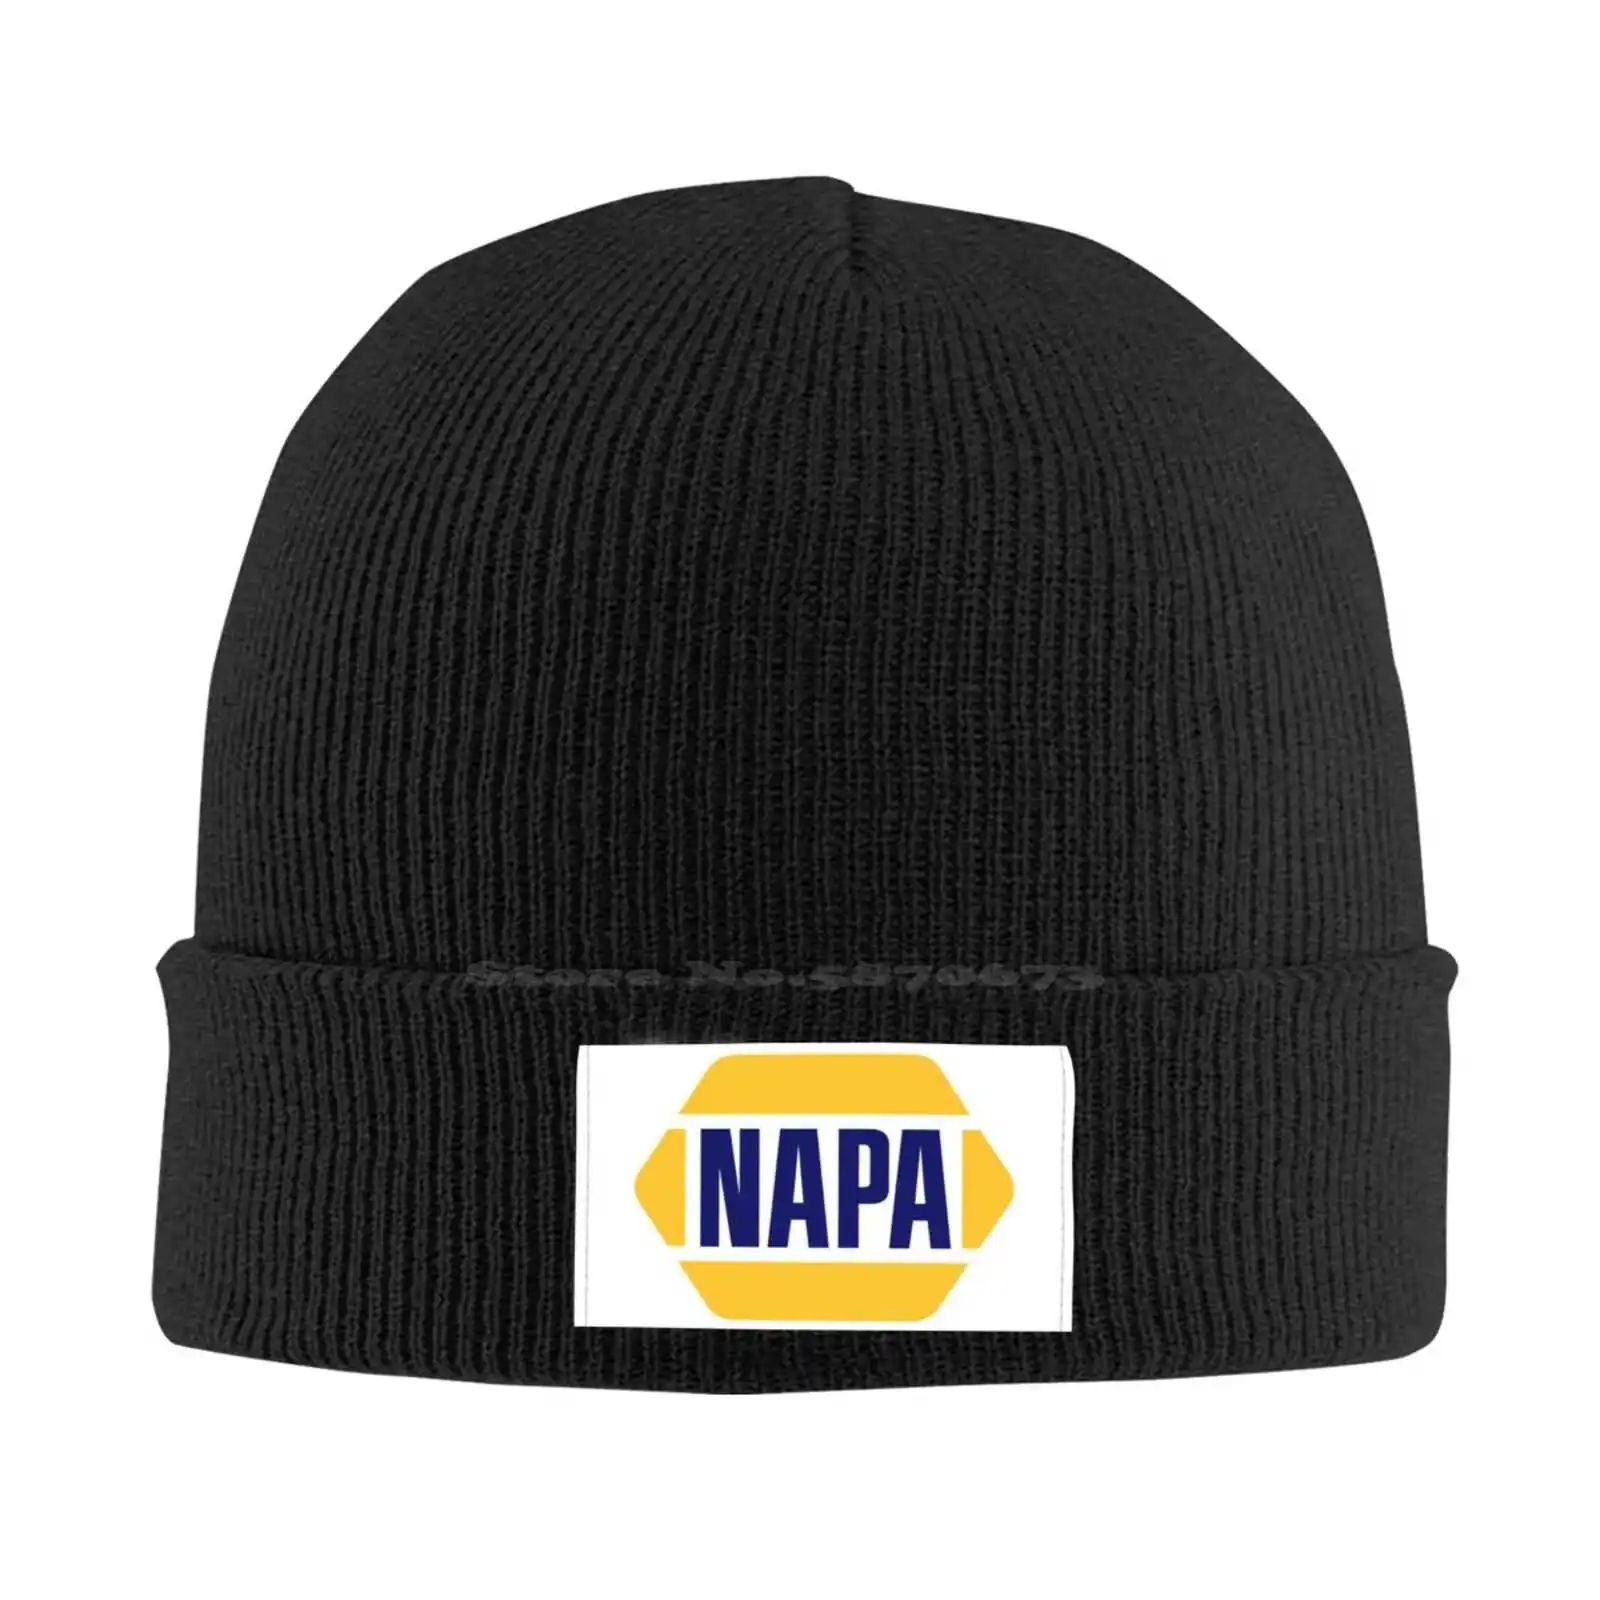 

Автозапчасти, логотип Napa, модная кепка, качественная бейсбольная модель